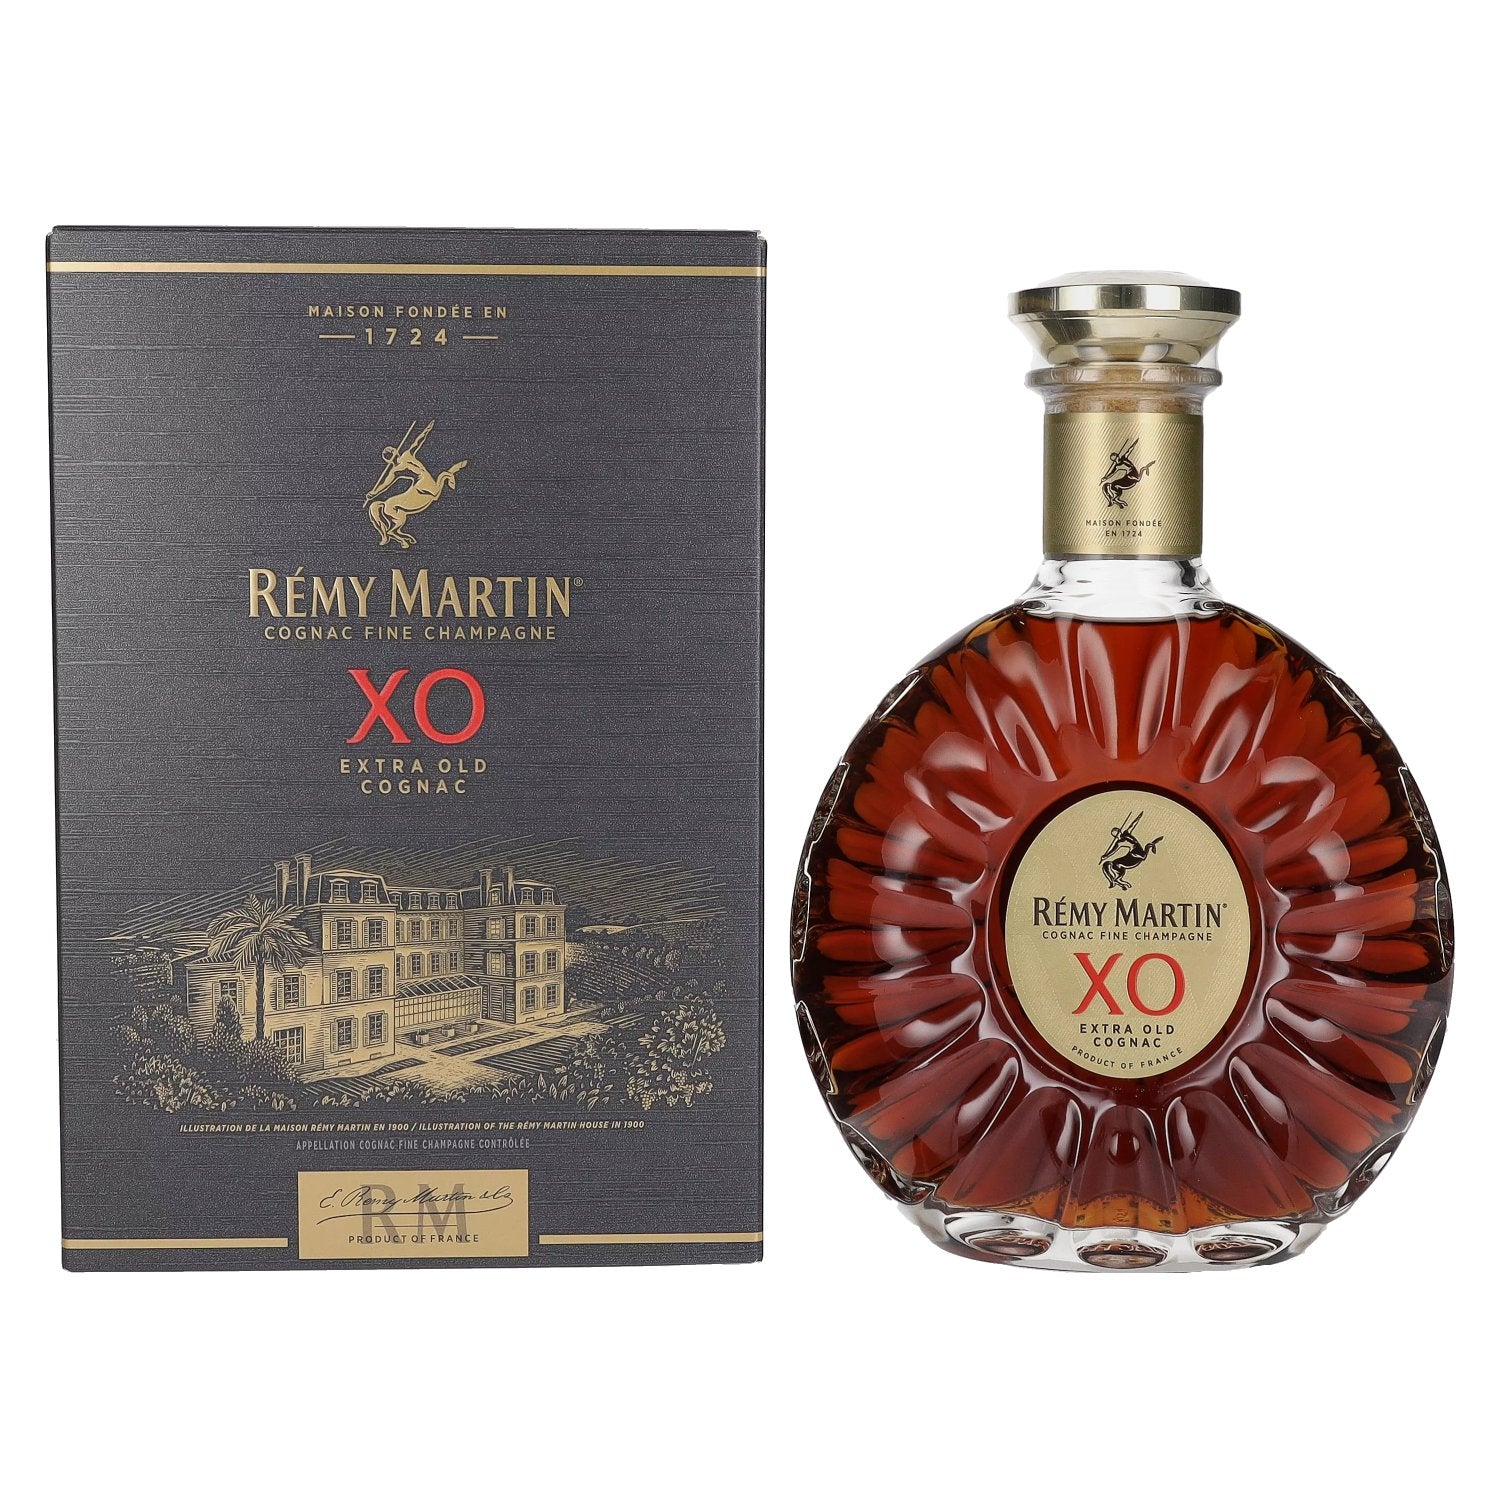 Remy Martin XO EXTRA OLD Cognac Fine Champagne 40% Vol. 0,7l in Giftbox